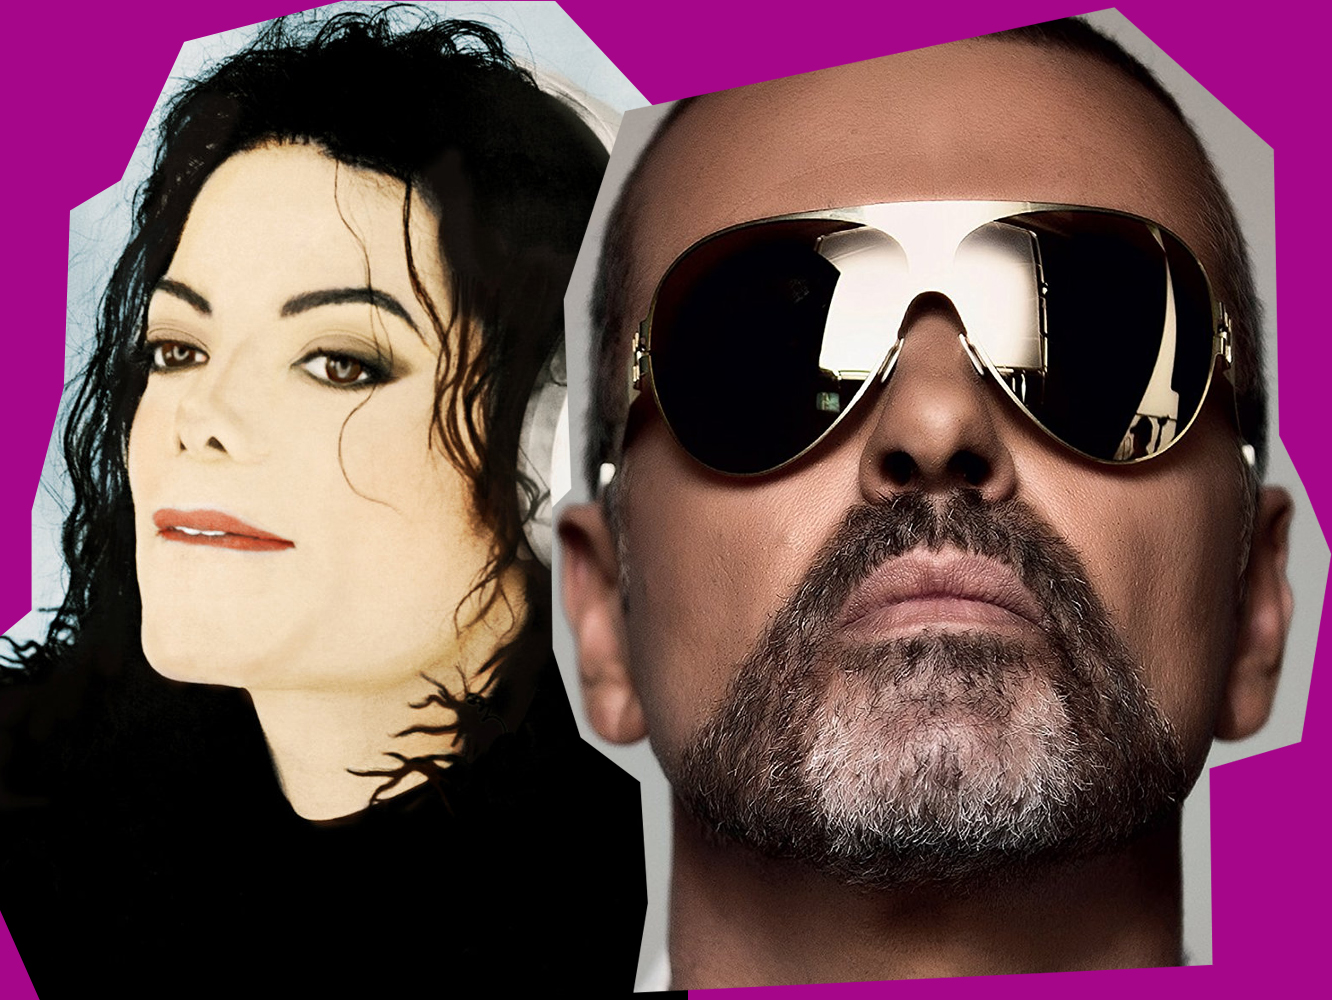  Hay ‘nuevos’ lanzamientos, pero no ‘nuevos’ singles de George Michael o Michael Jackson